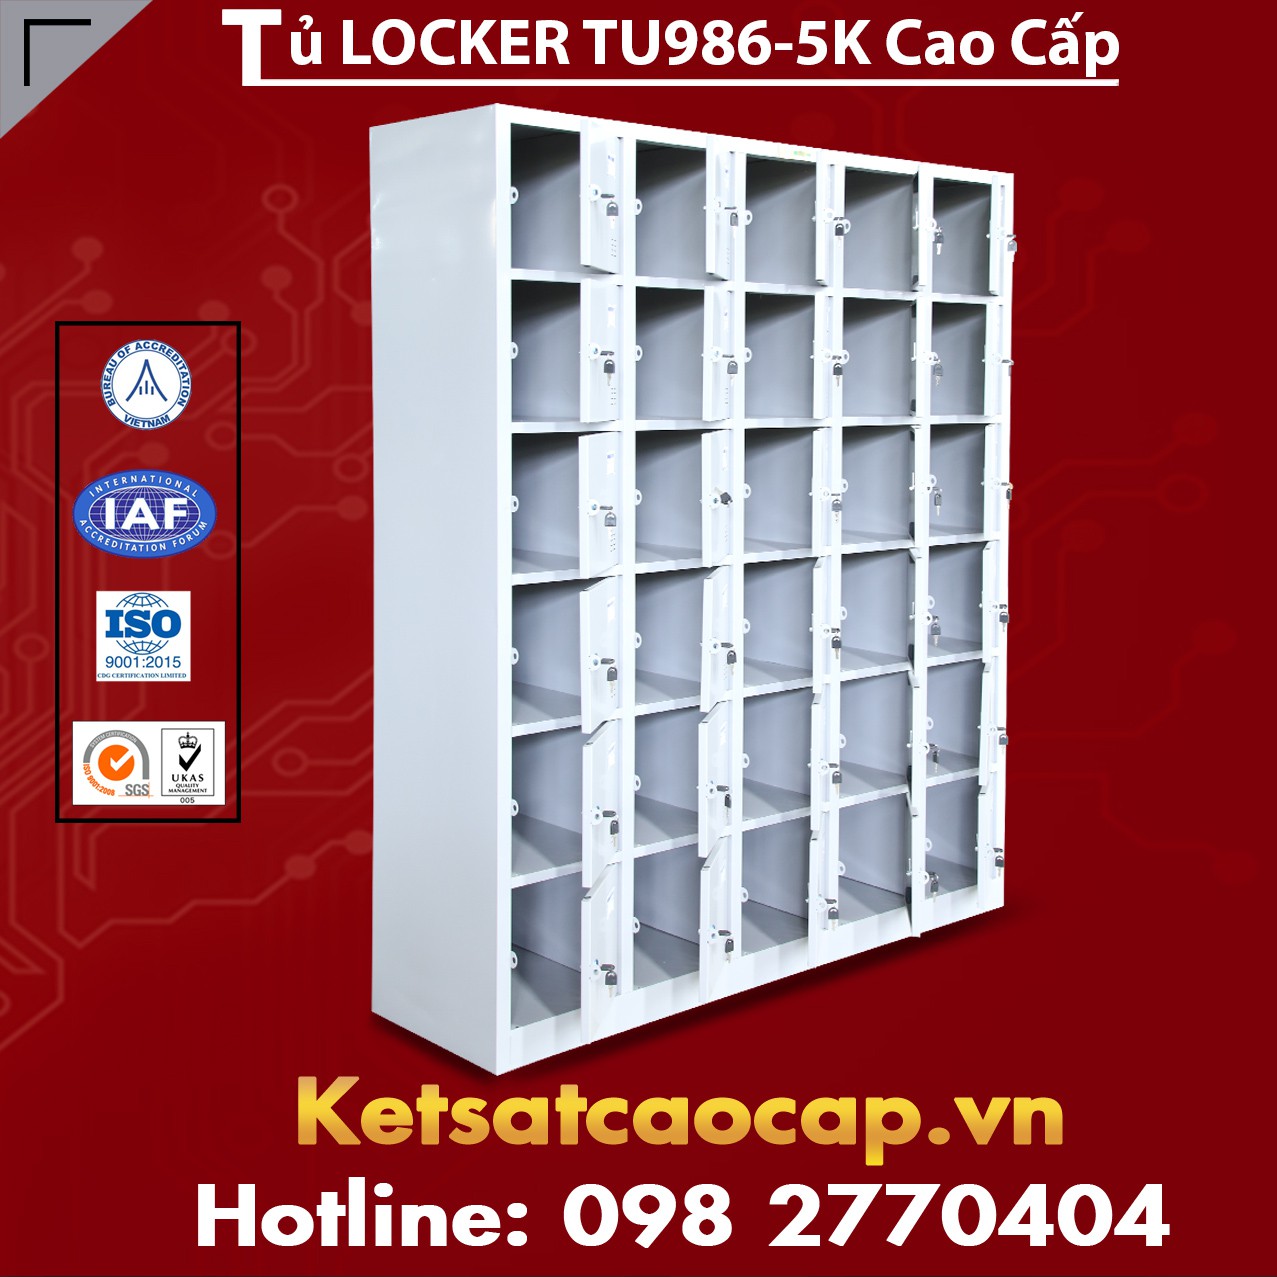 Tủ Locker TU986-5K